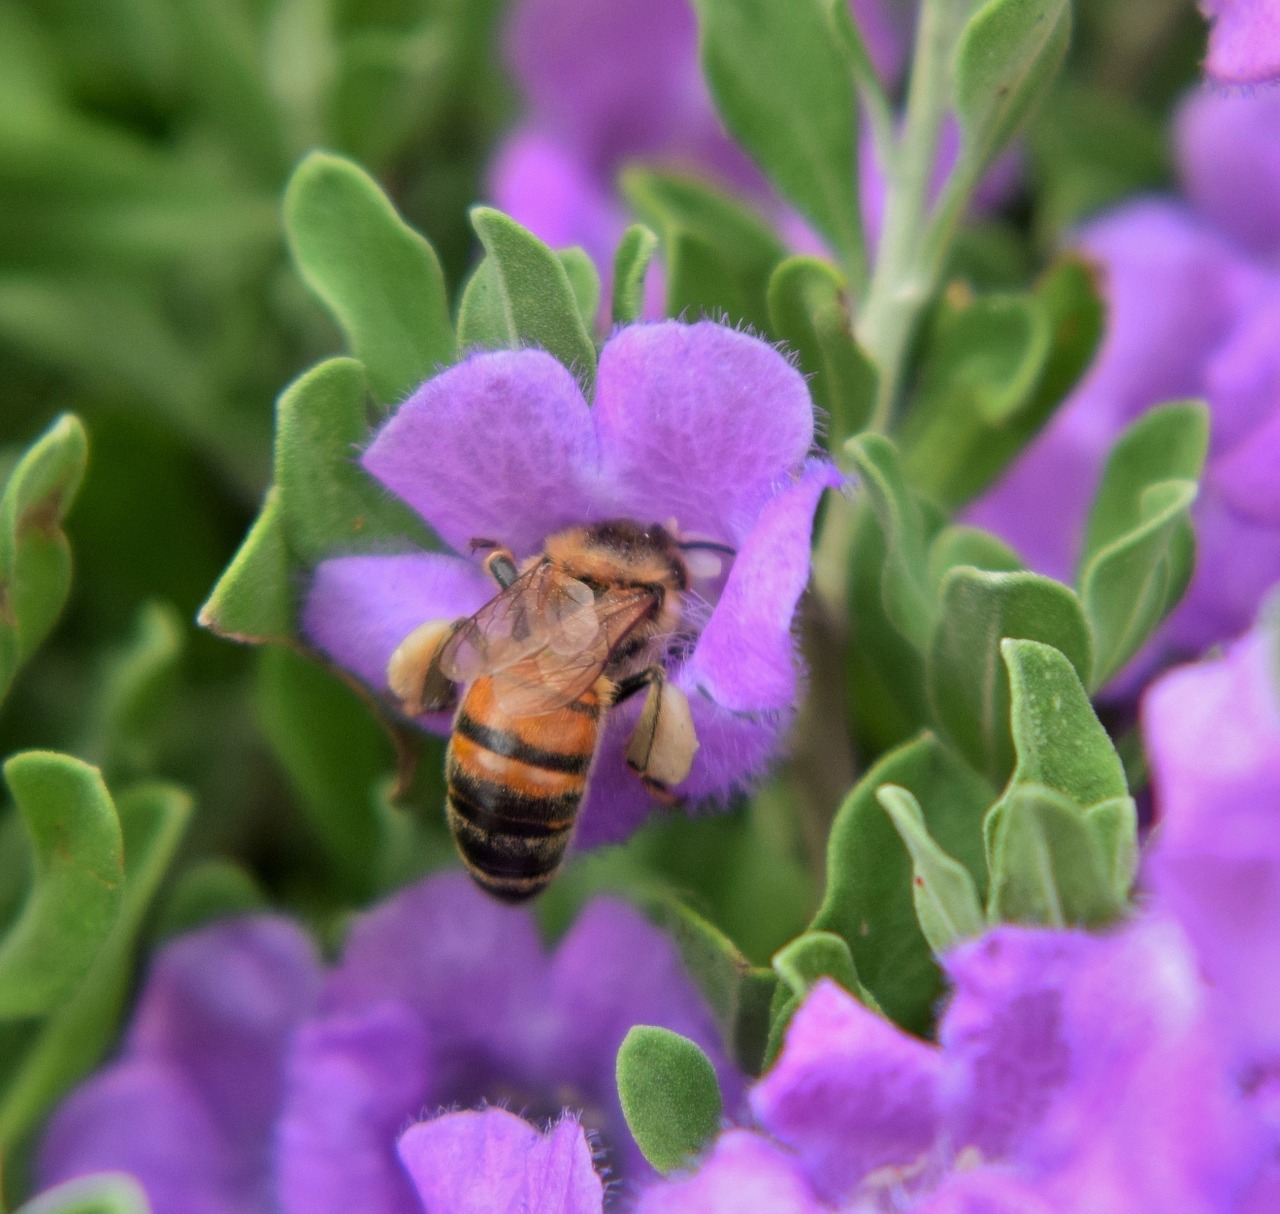 bee honey bee pollen free photo